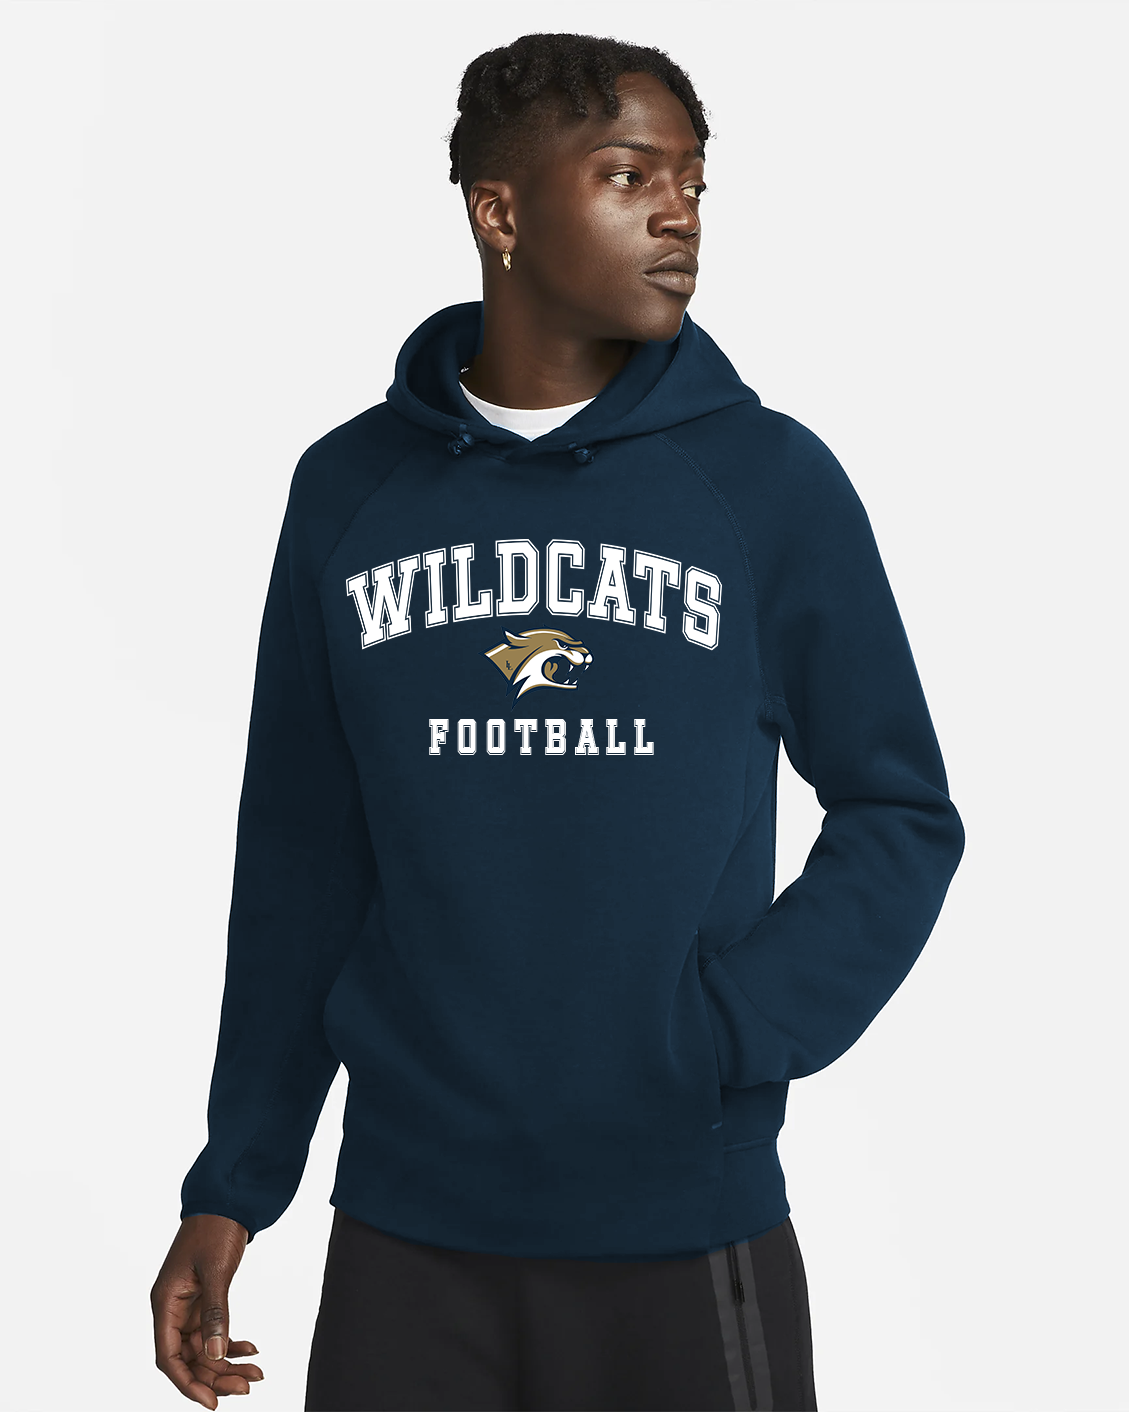 Coton ouaté sport - Wildcats